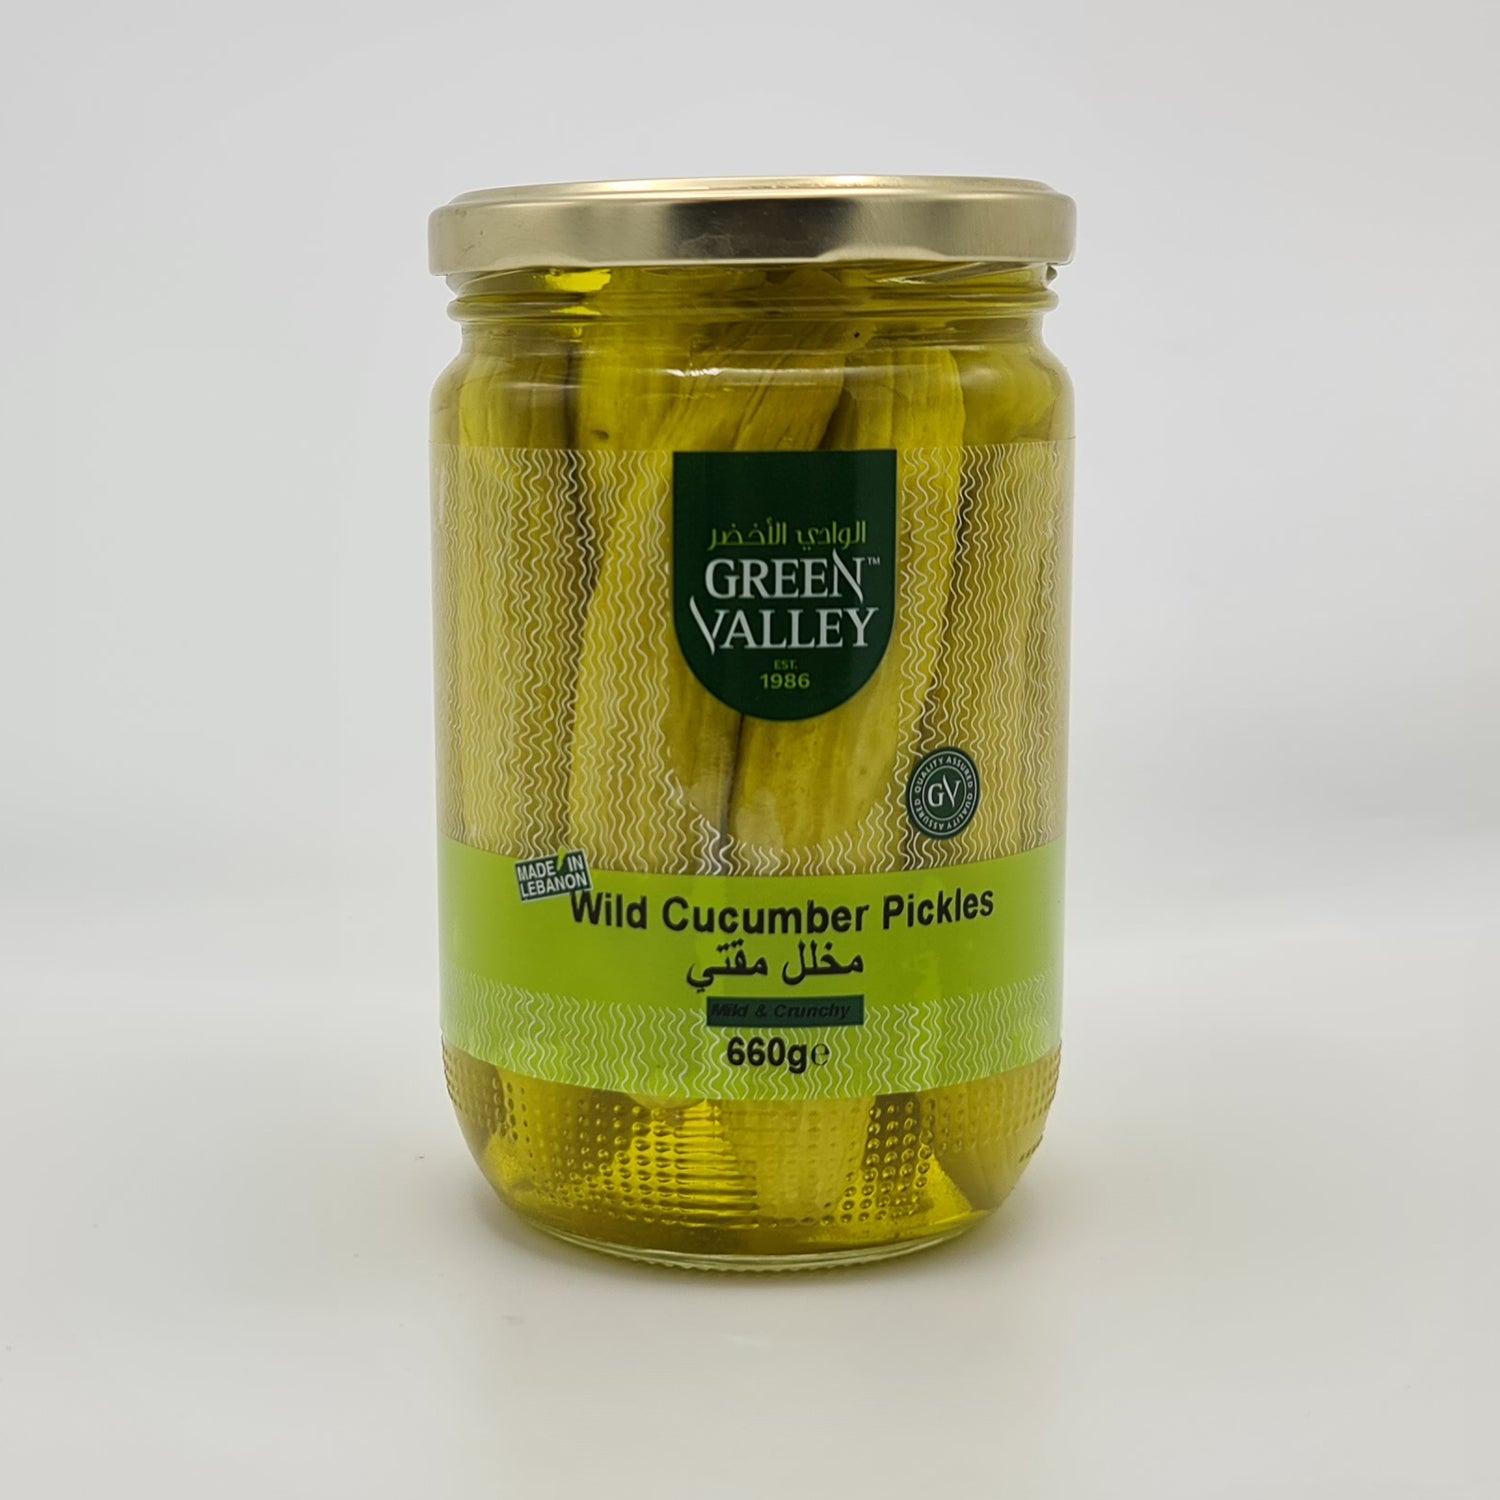 Green Valley Wild Cucumber Pickles - Fresh